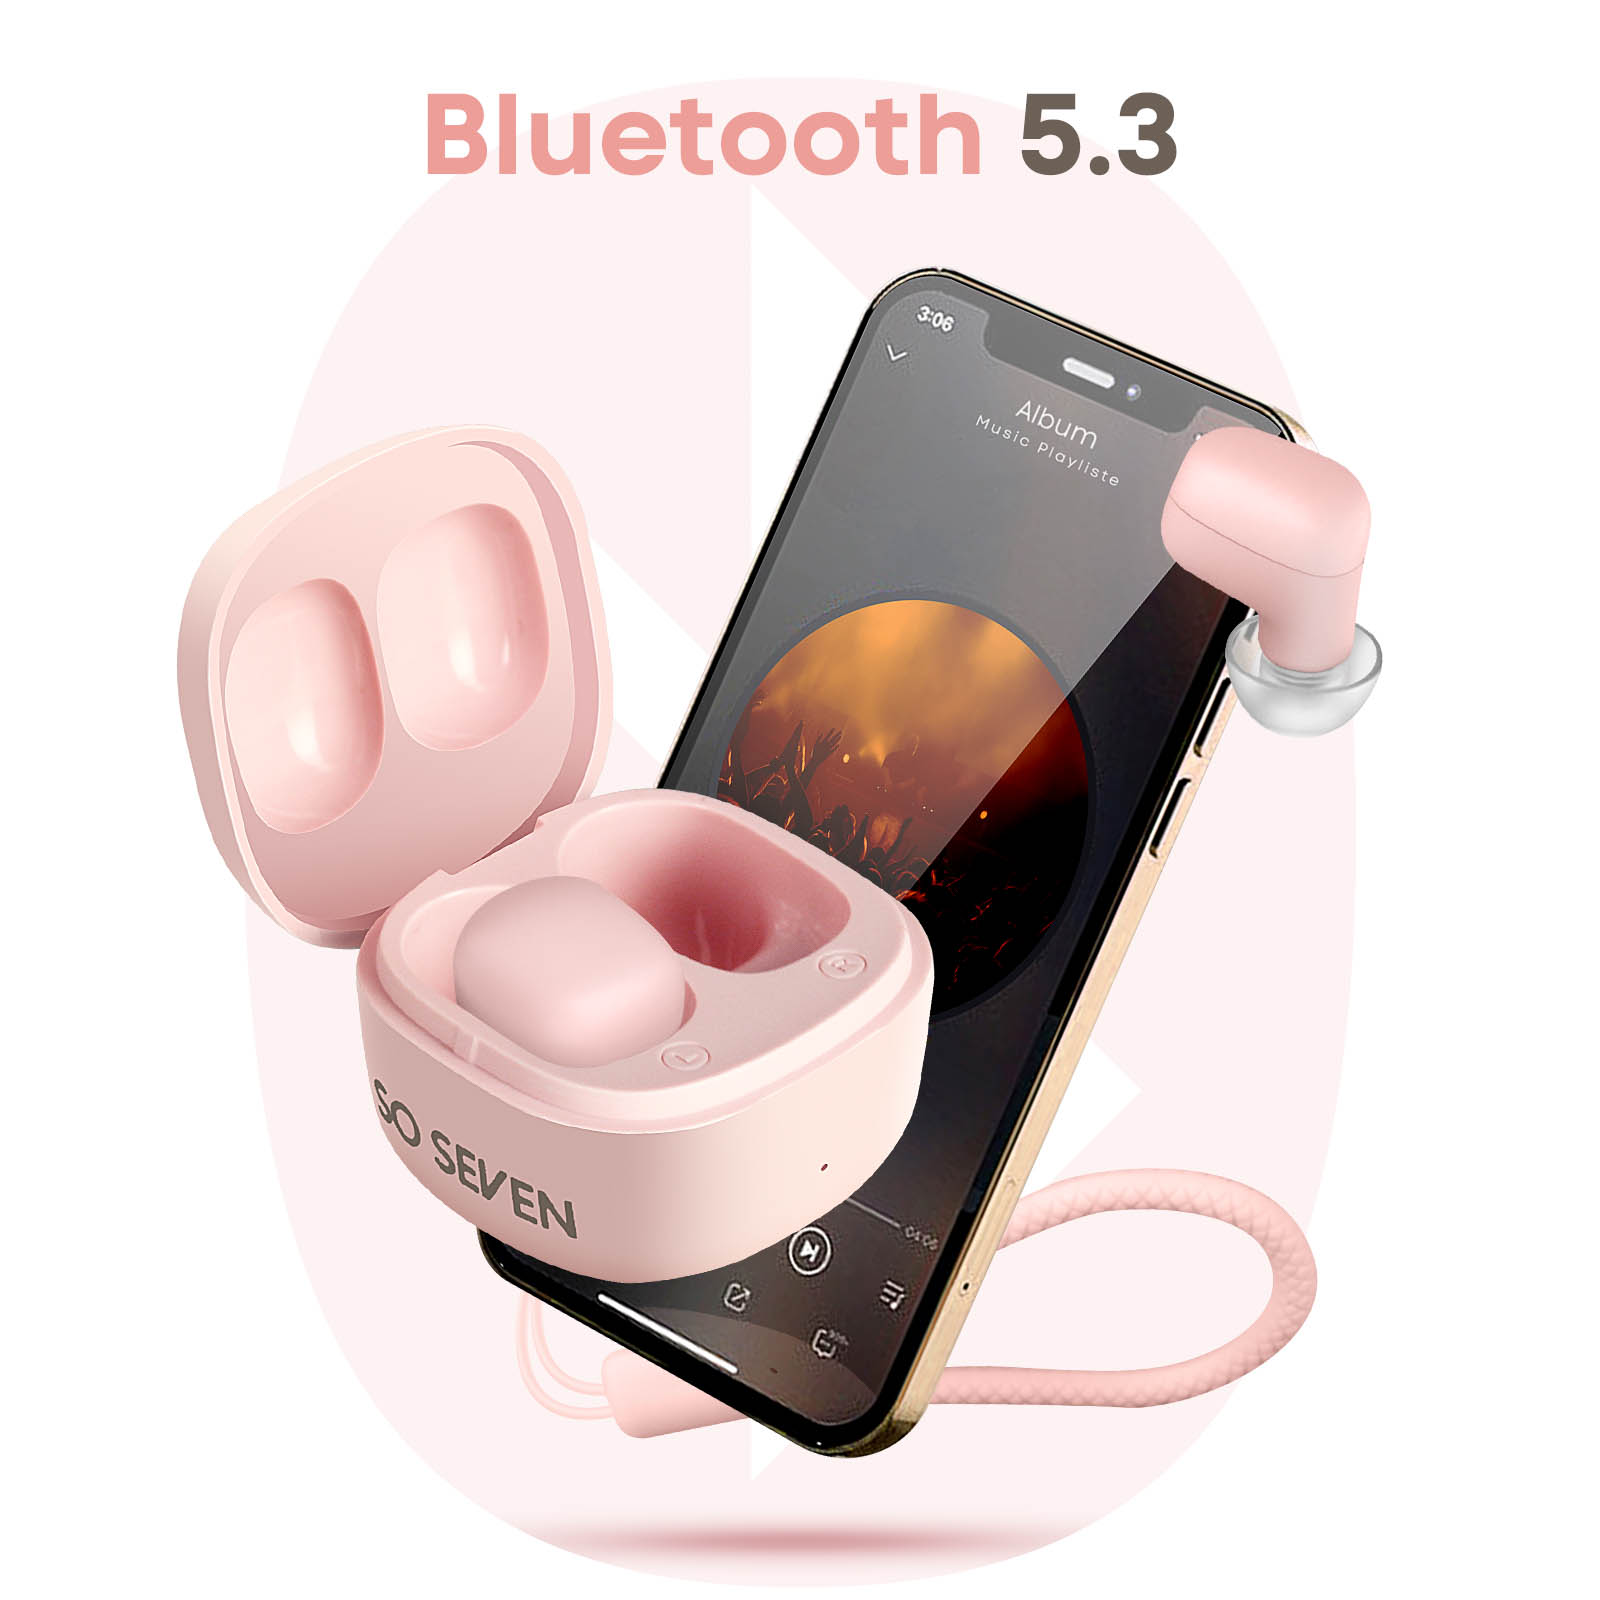 Bluetooth Gesamthördauer Bluetooth SO 5.3, SEVEN Kopfhörer 20 Std.